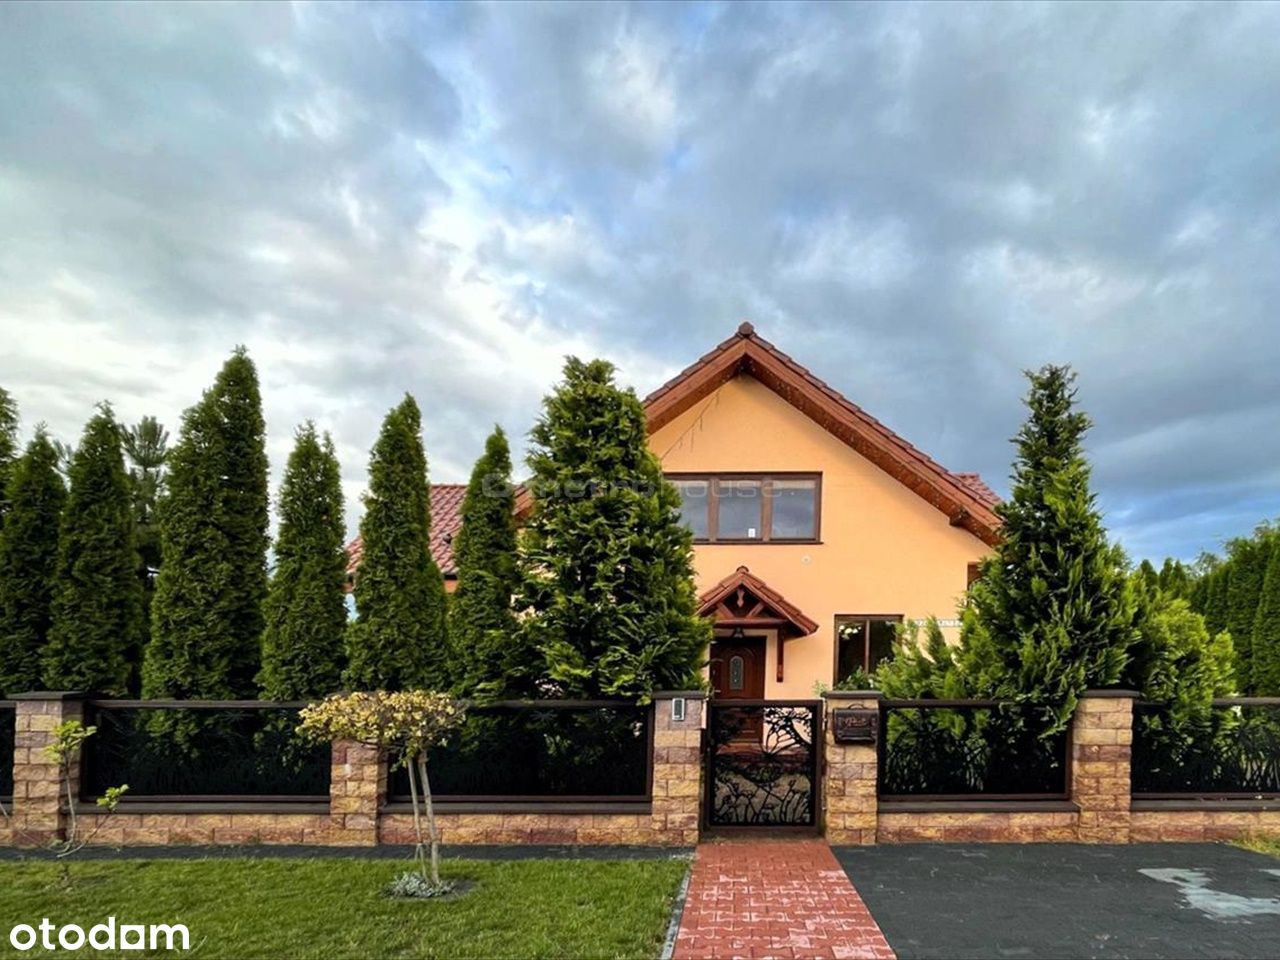 Piękny dom na wynajem w Tarnowie Podgórnym.